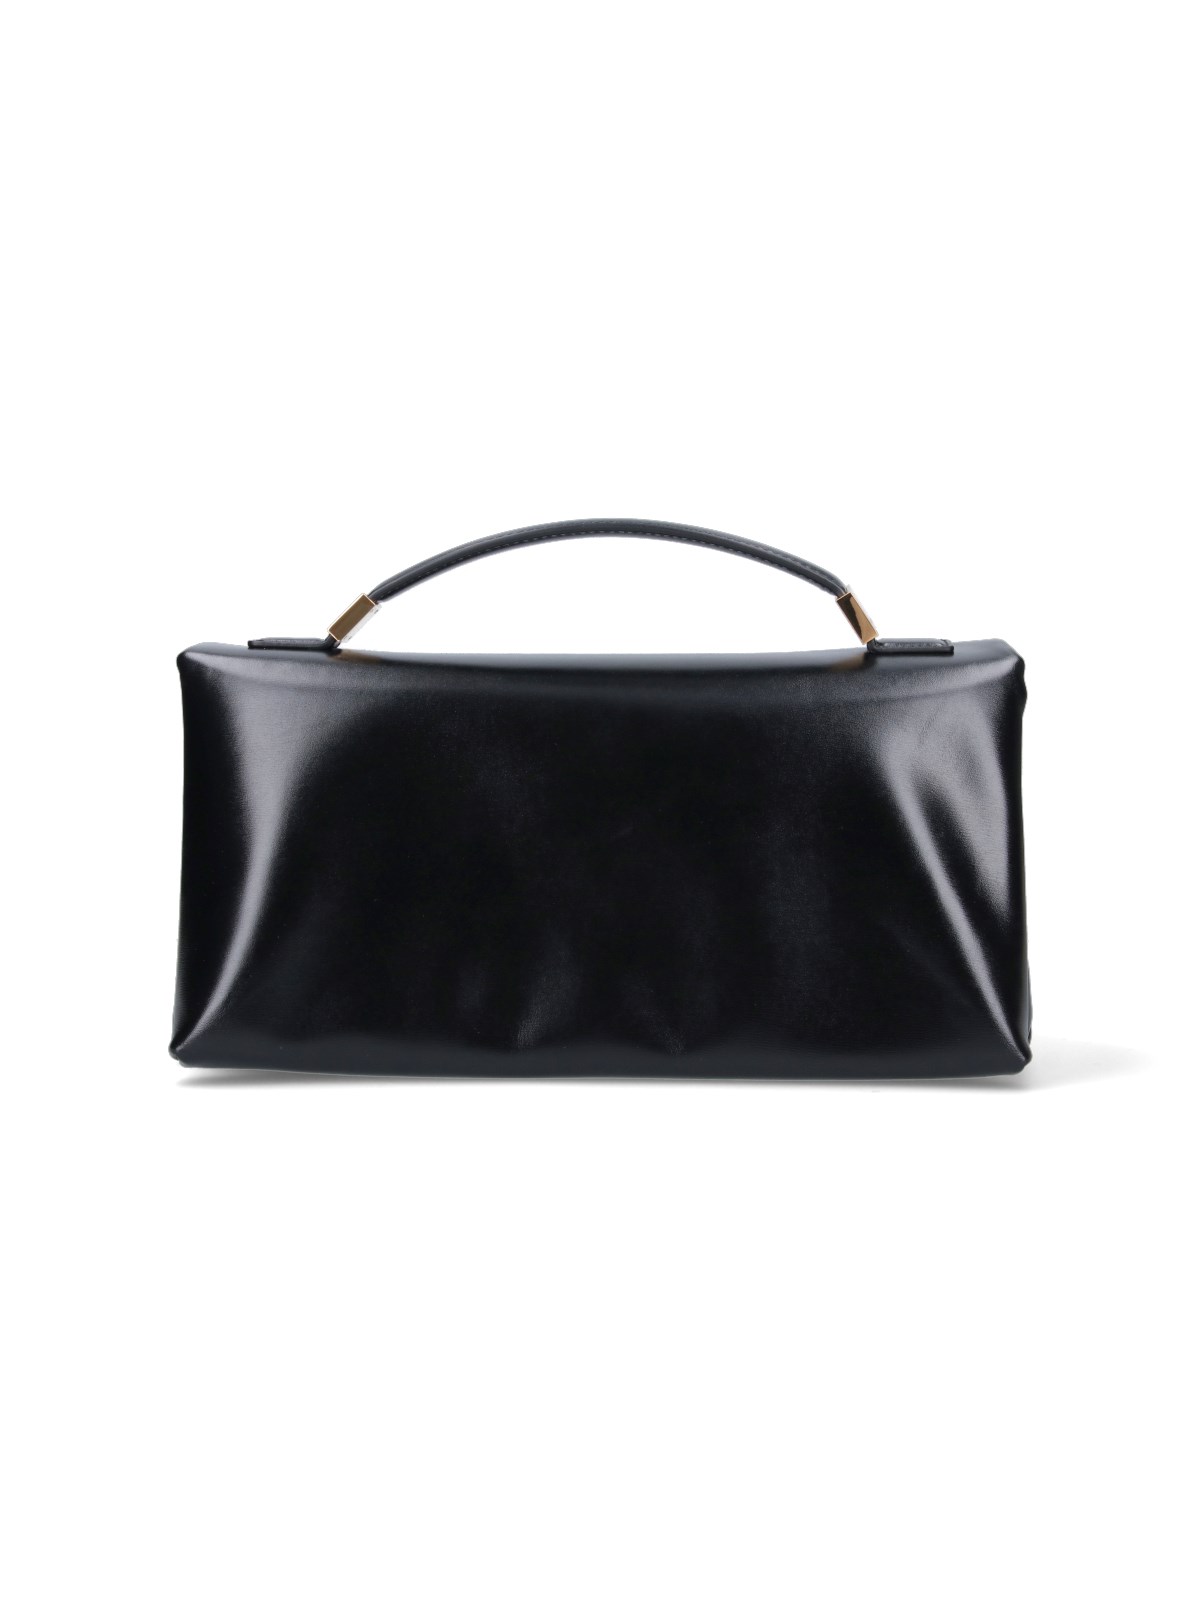 Marni "prisma" Handbag In Black  